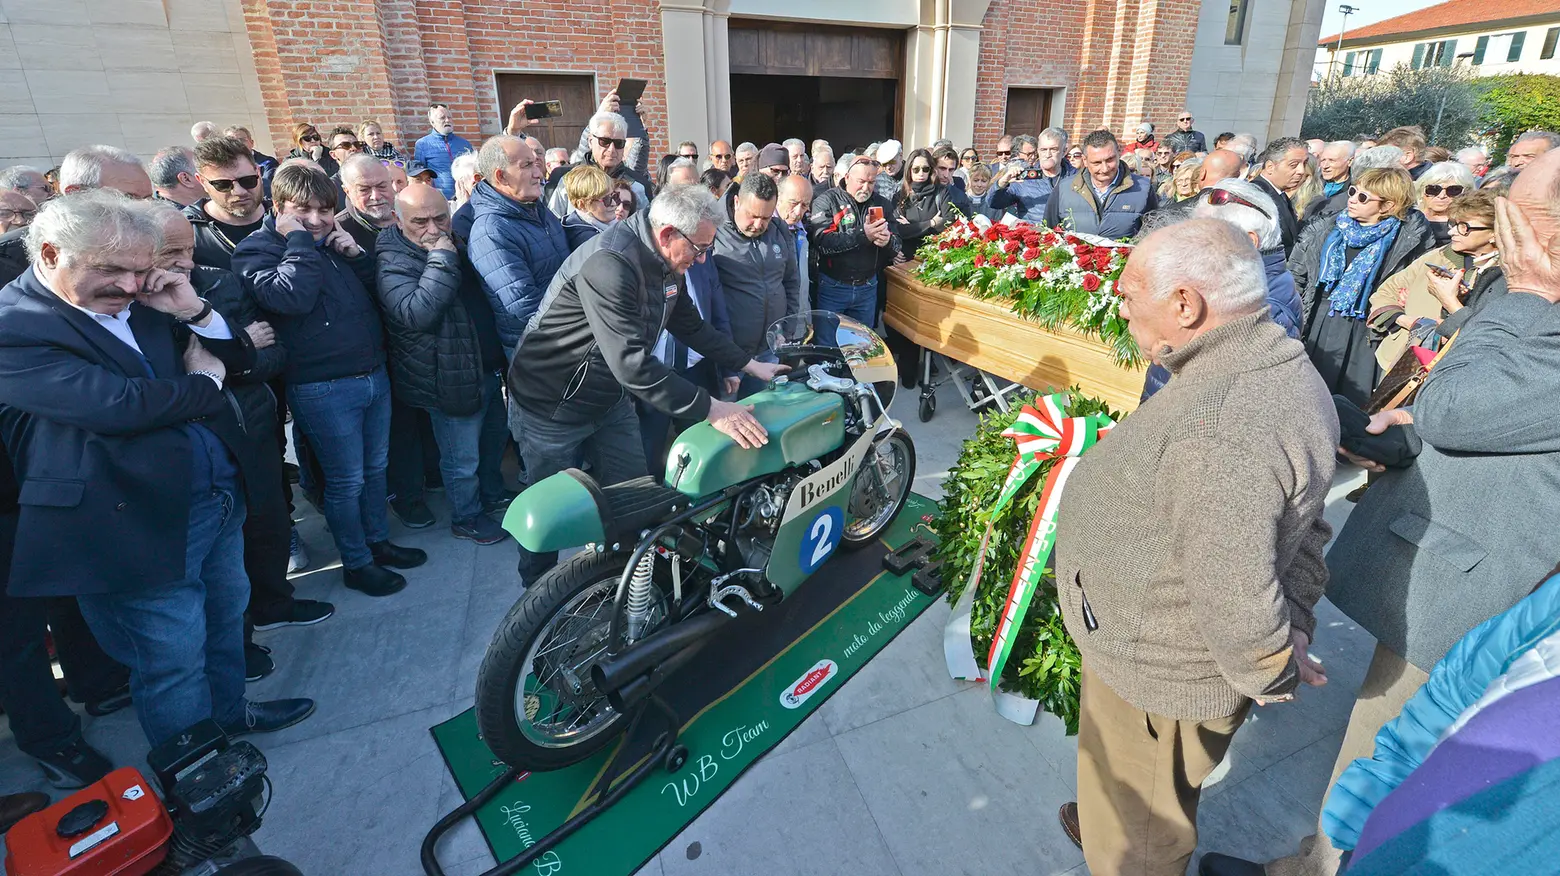 I funerali Luciano Battisti: il rombo della Benelli dopo la cerimonia (Toni)